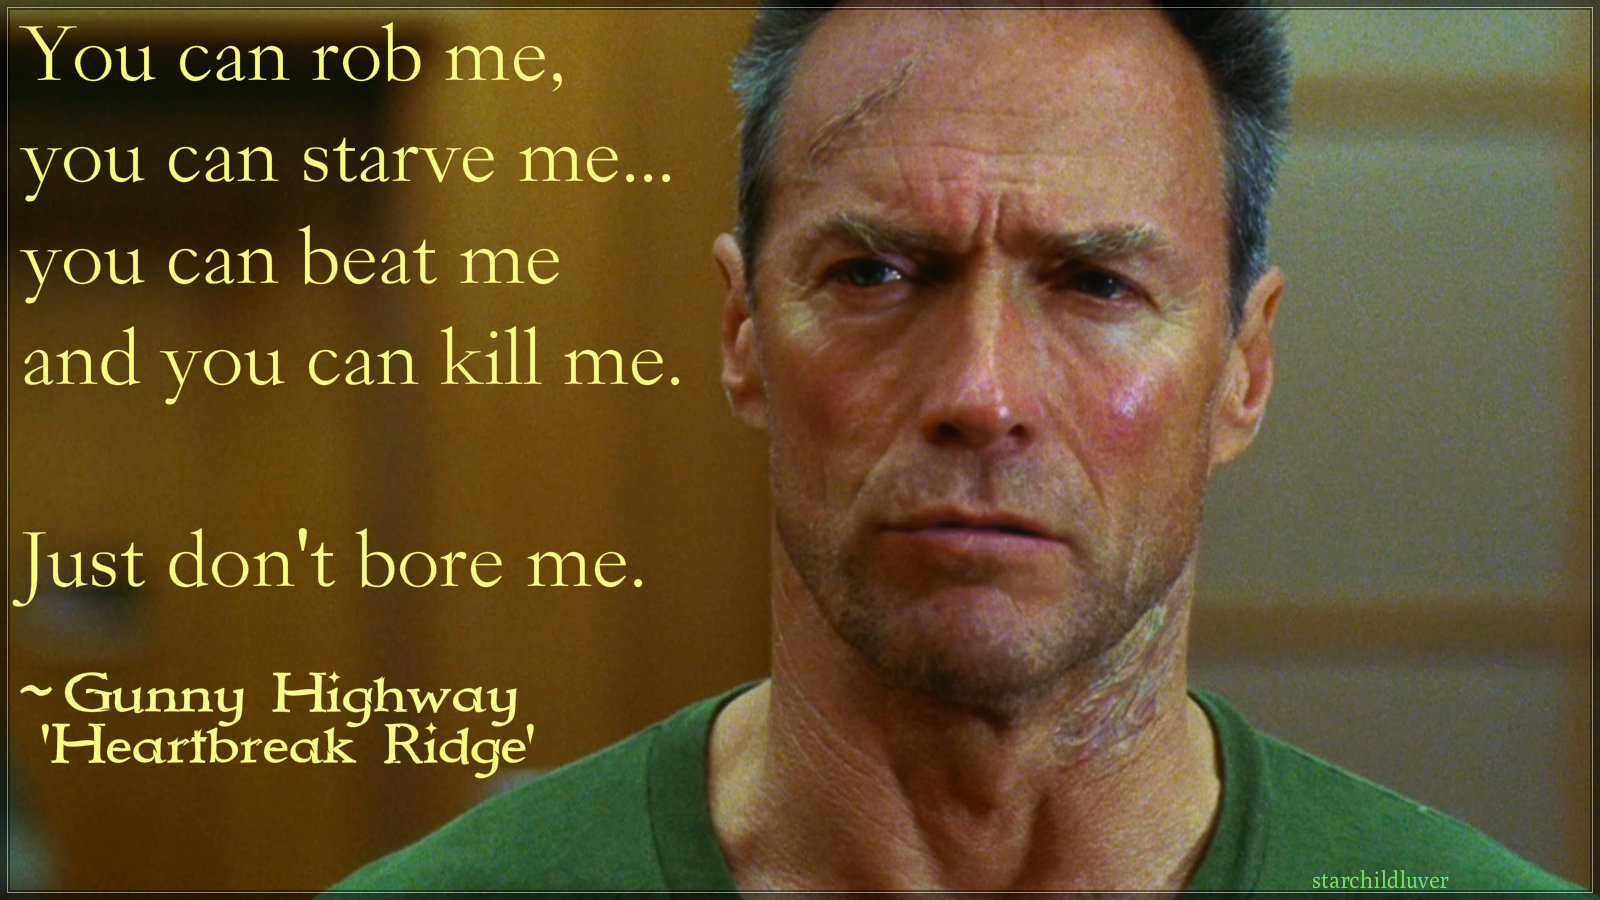 Clint Eastwood In Heartbreak Ridge - Clint Eastwood Heartbreak Ridge Haircut , HD Wallpaper & Backgrounds